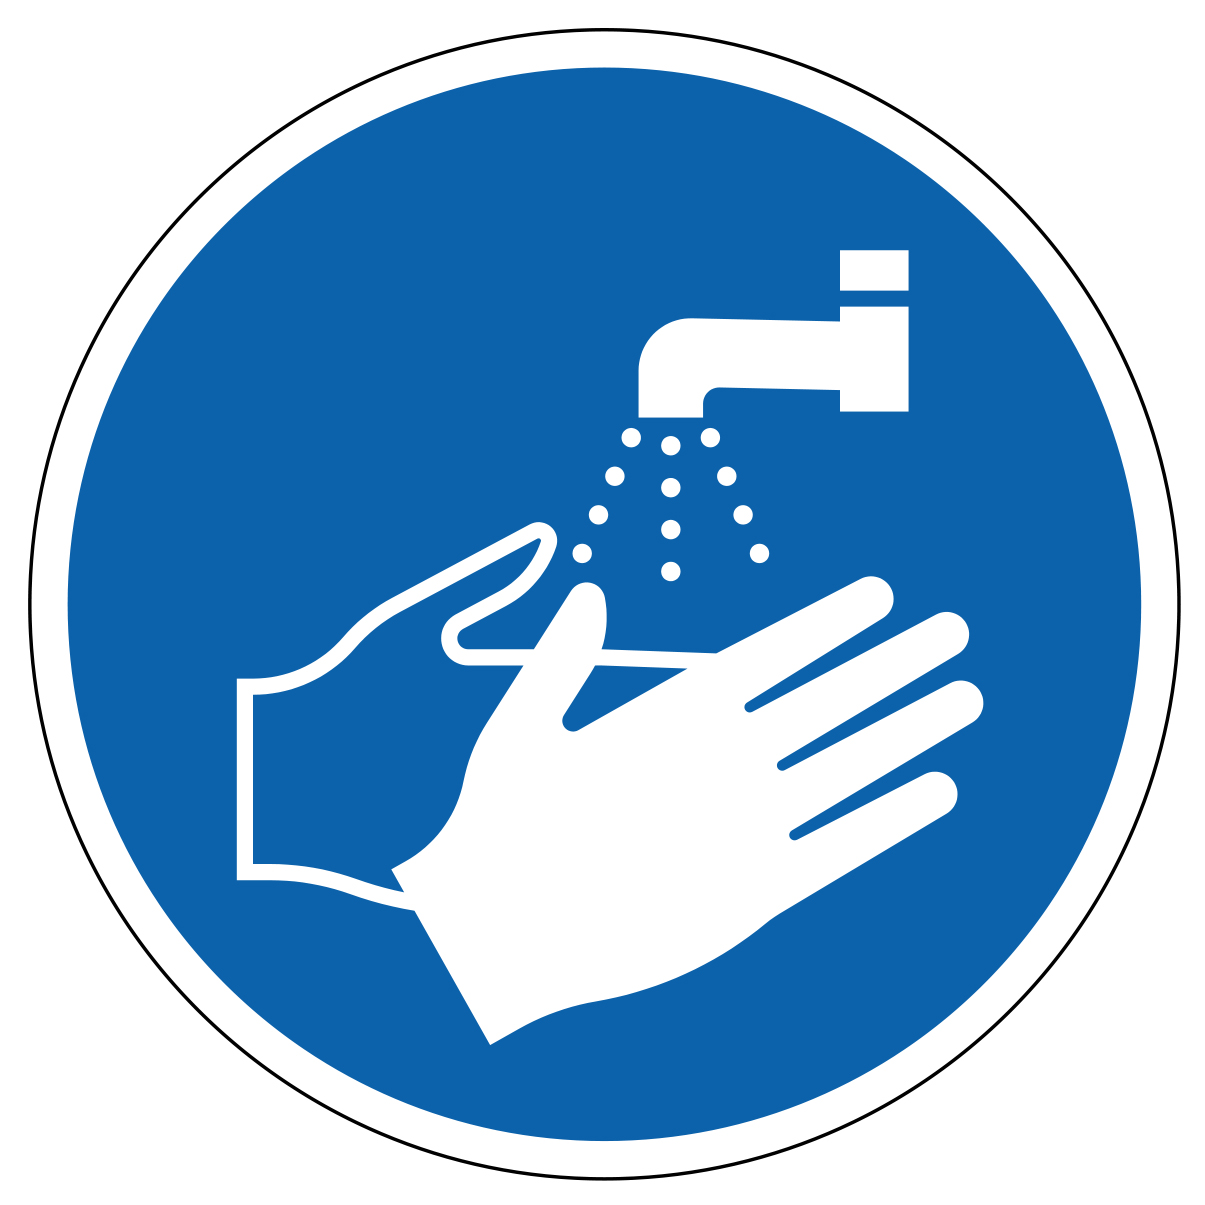 Lavage des mains obligatoire - étiquettes et panneaux d'obligation et de consigne